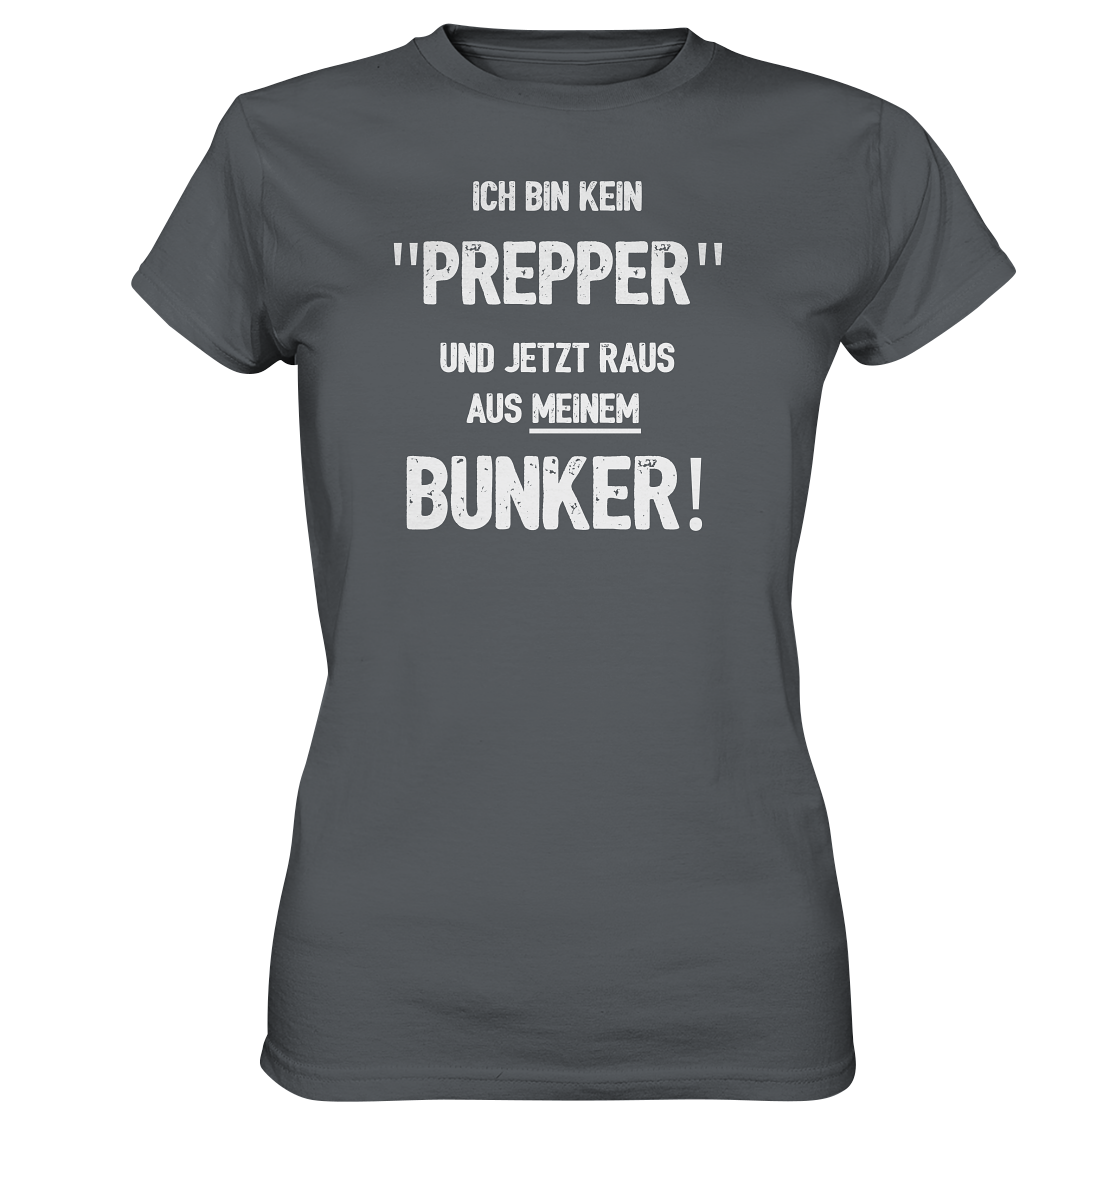 Ich bin kein "Prepper"... Geile Sprüche, Geile Designs - Ladies Premium Shirt